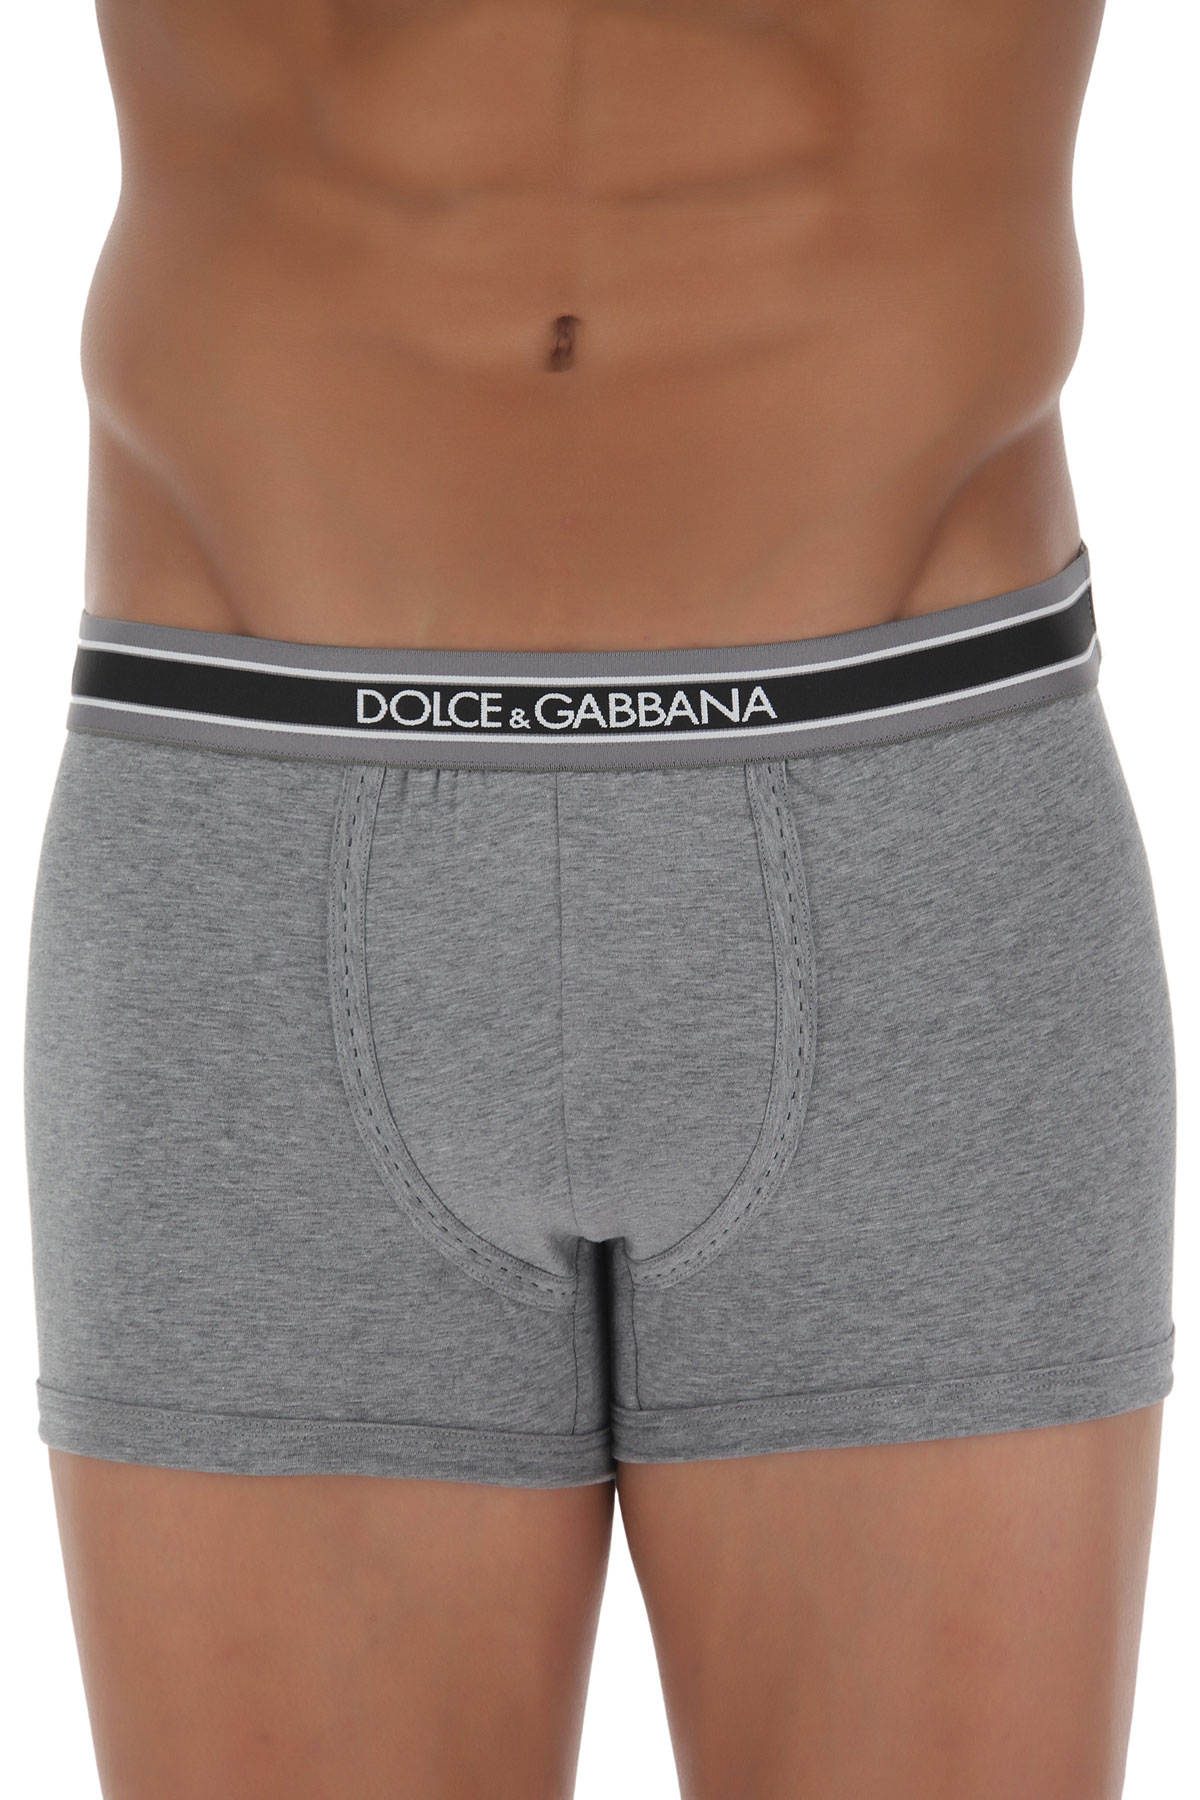 Dolce & Gabbana Caleçon Boxer Homme, Boxer , Gris Mélange, Coton Pima, 2017, L M S XL